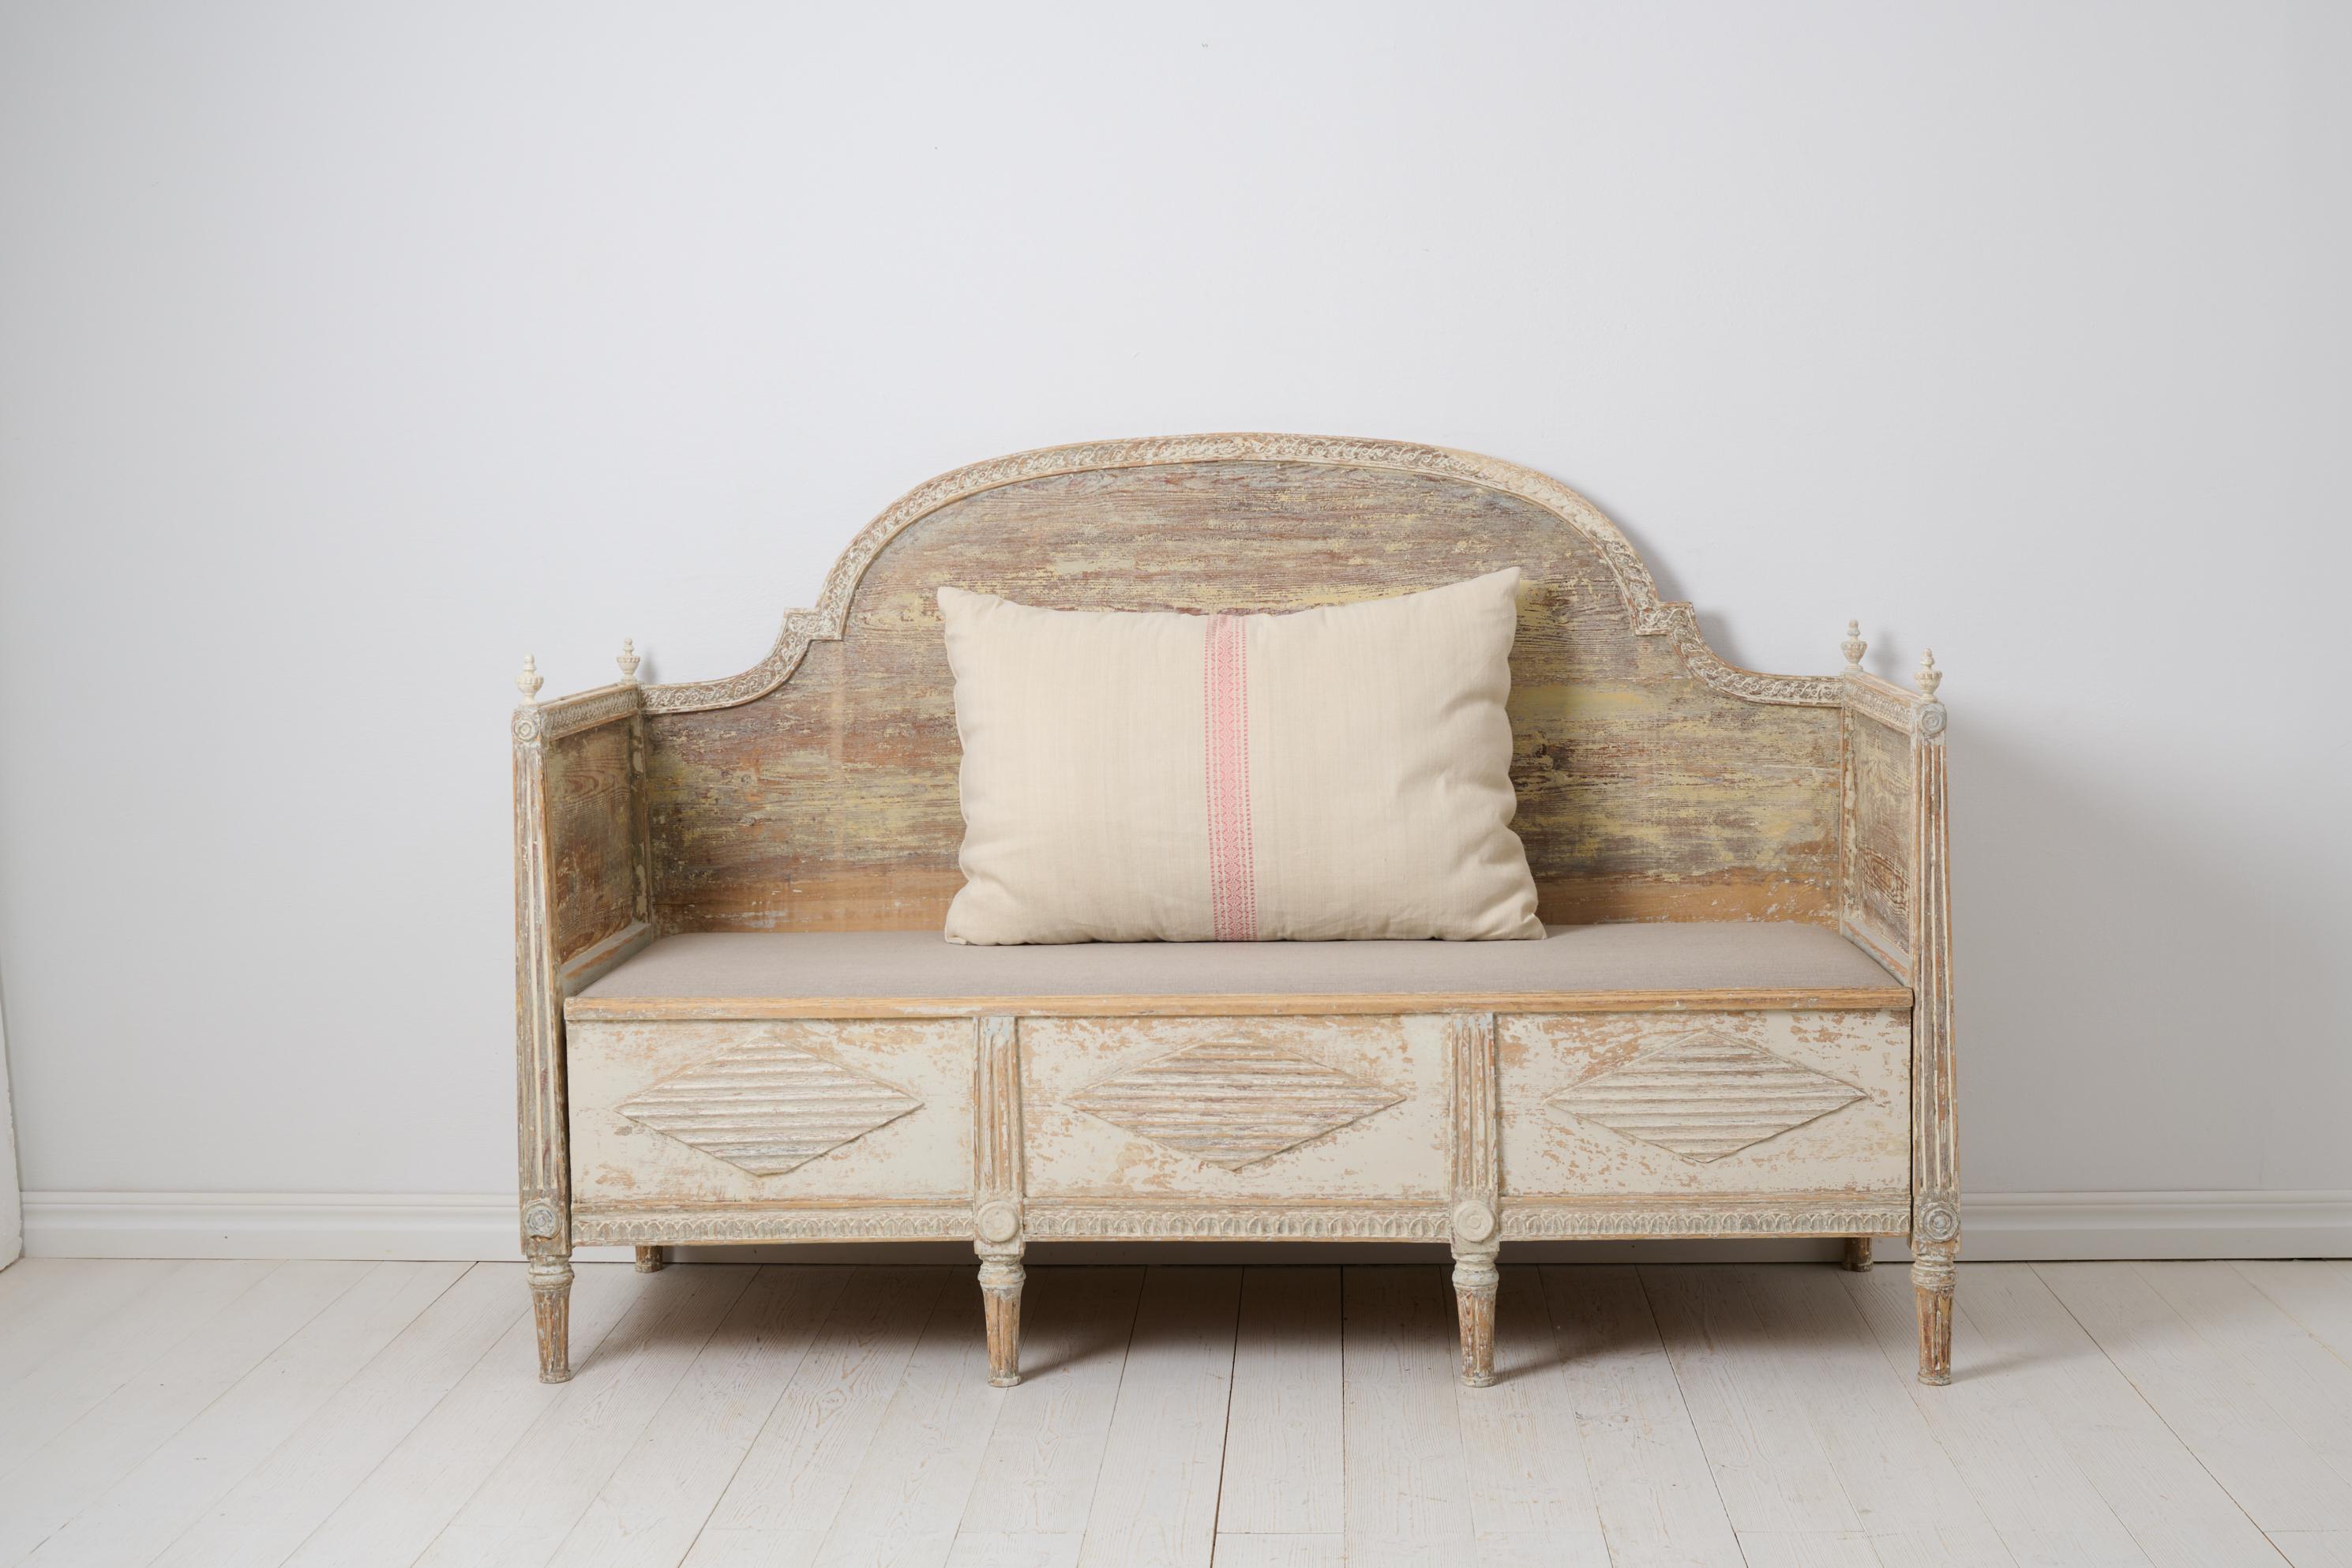 Antikes schwedisches Sofa im gustavianischen Stil. Das Sofa ist ein echtes Landhausmöbel, das um 1820 in Nordschweden handgefertigt wurde. Der Rahmen ist aus massivem Kiefernholz gefertigt und die Oberfläche wurde von Hand bis auf die erste